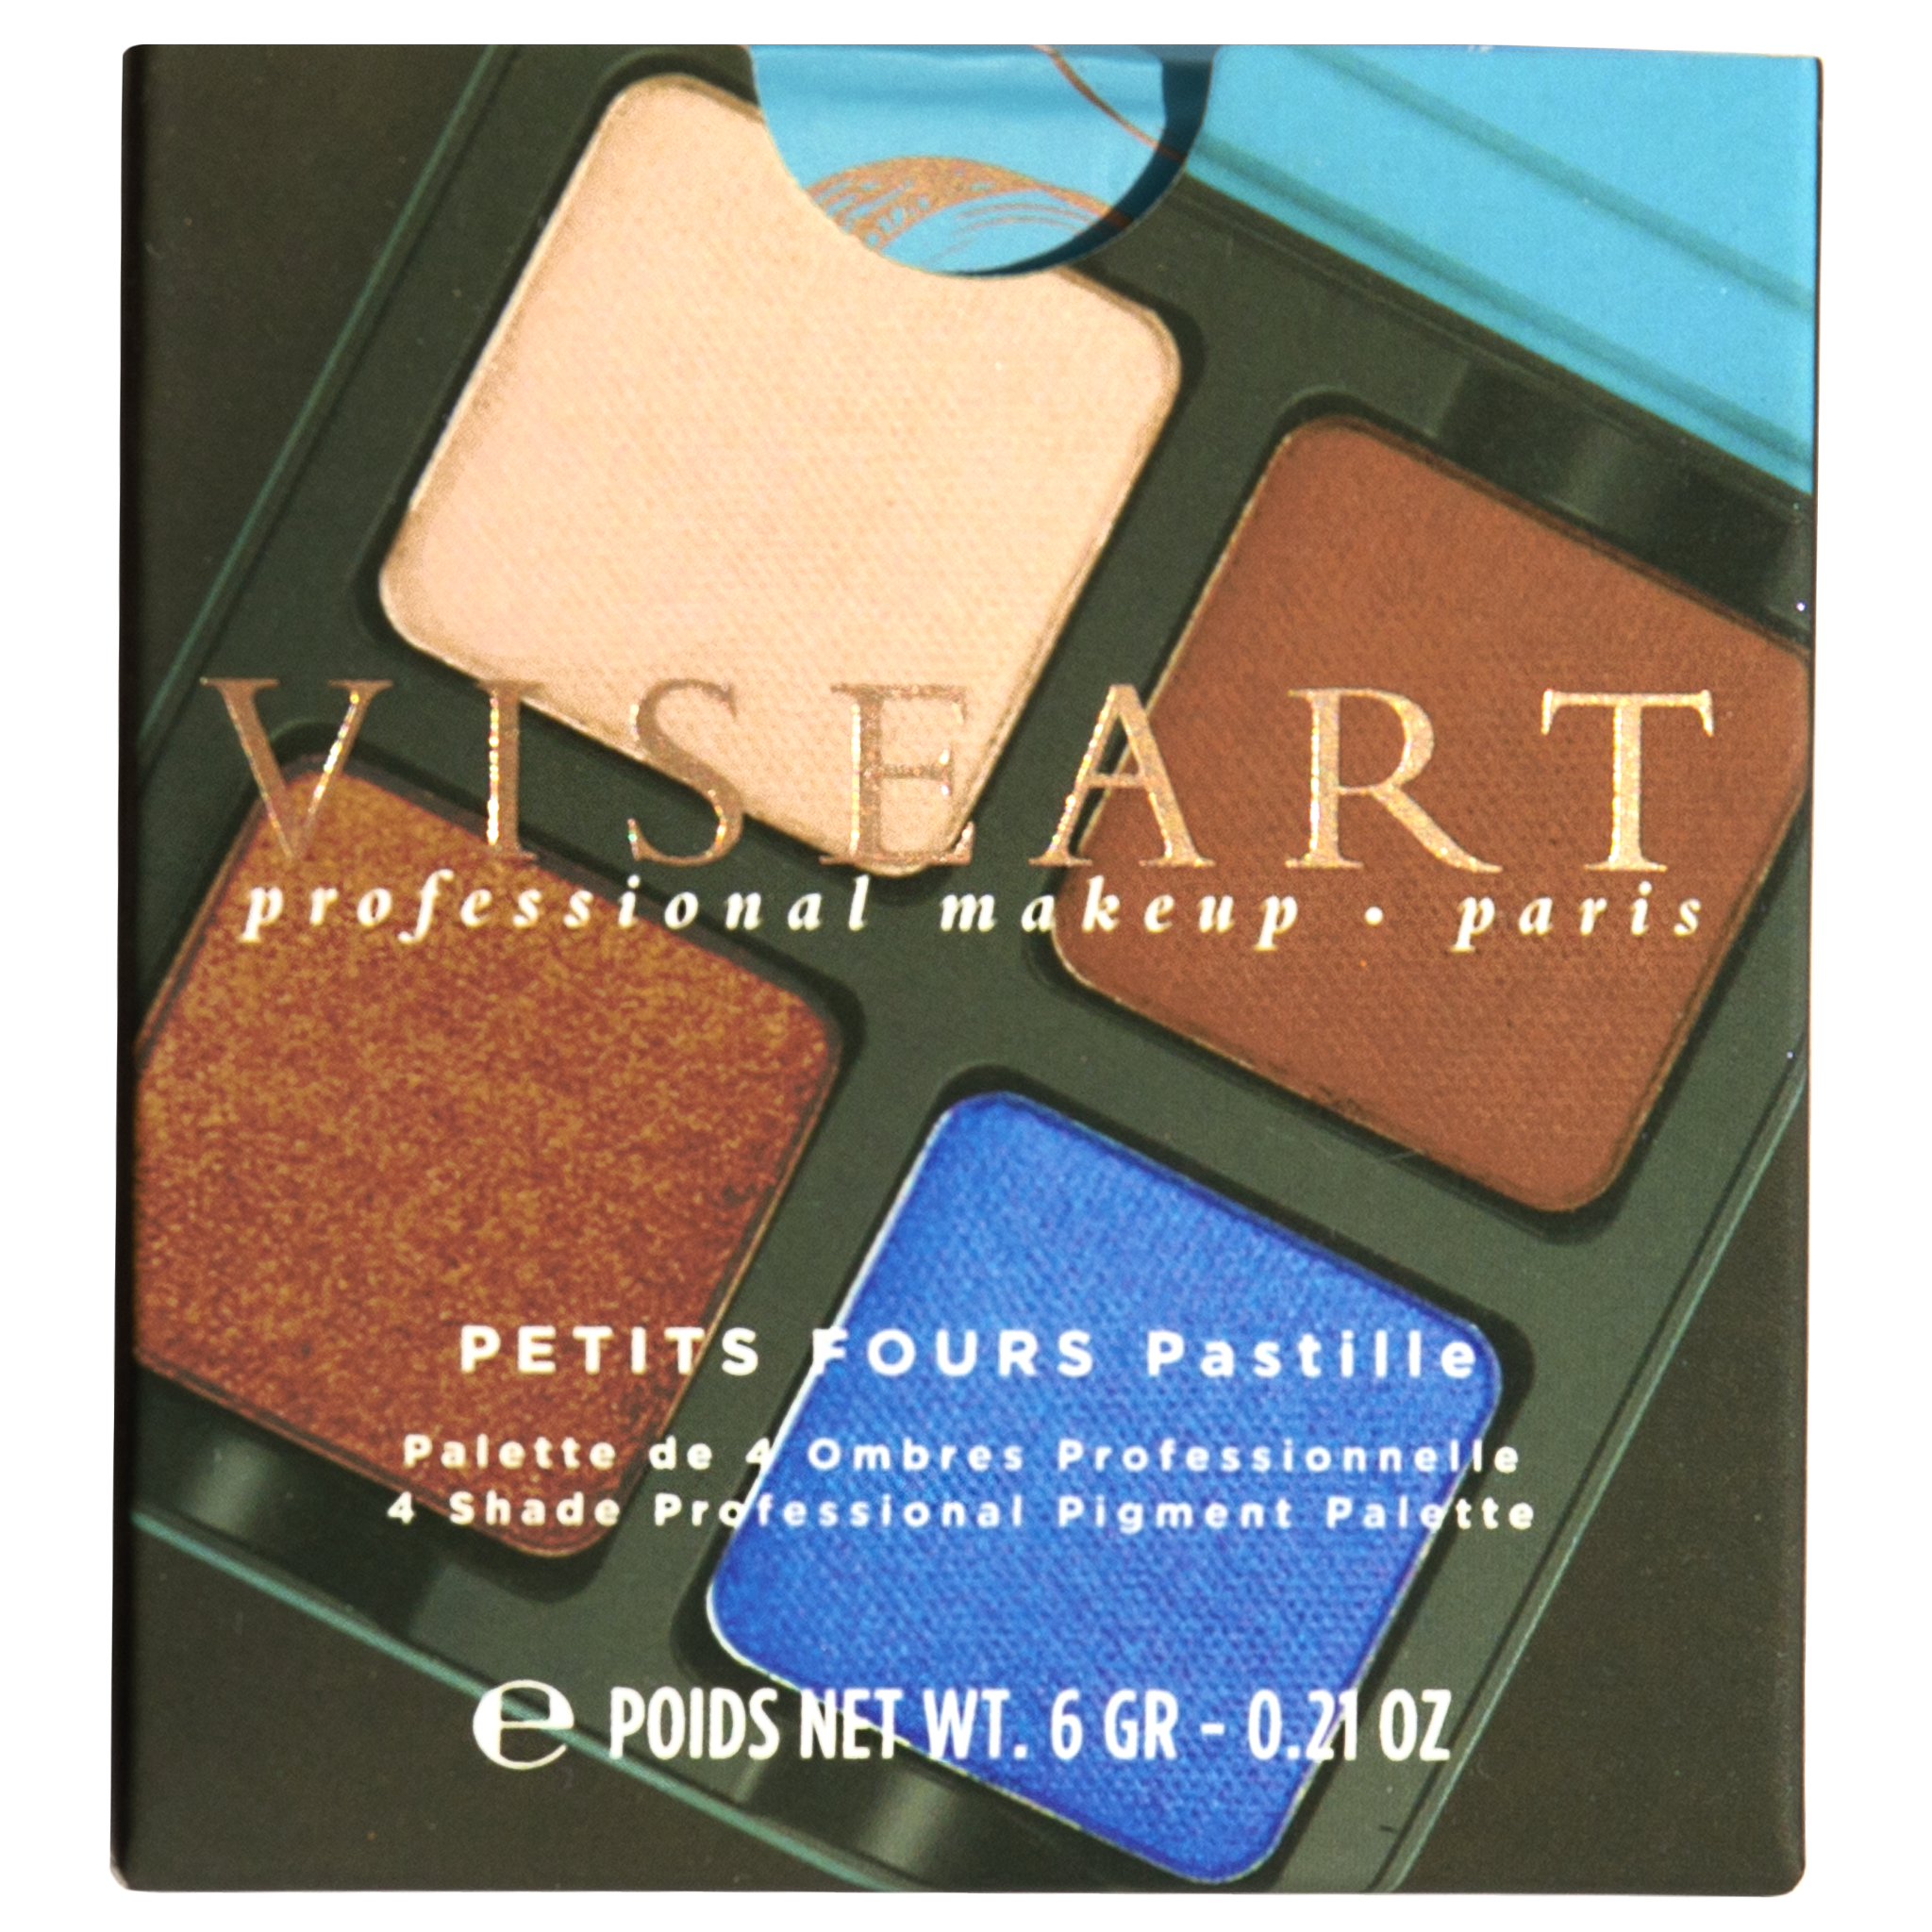 Viseart Paris Petits Fours Pastille Eyeshadow Palette Carton